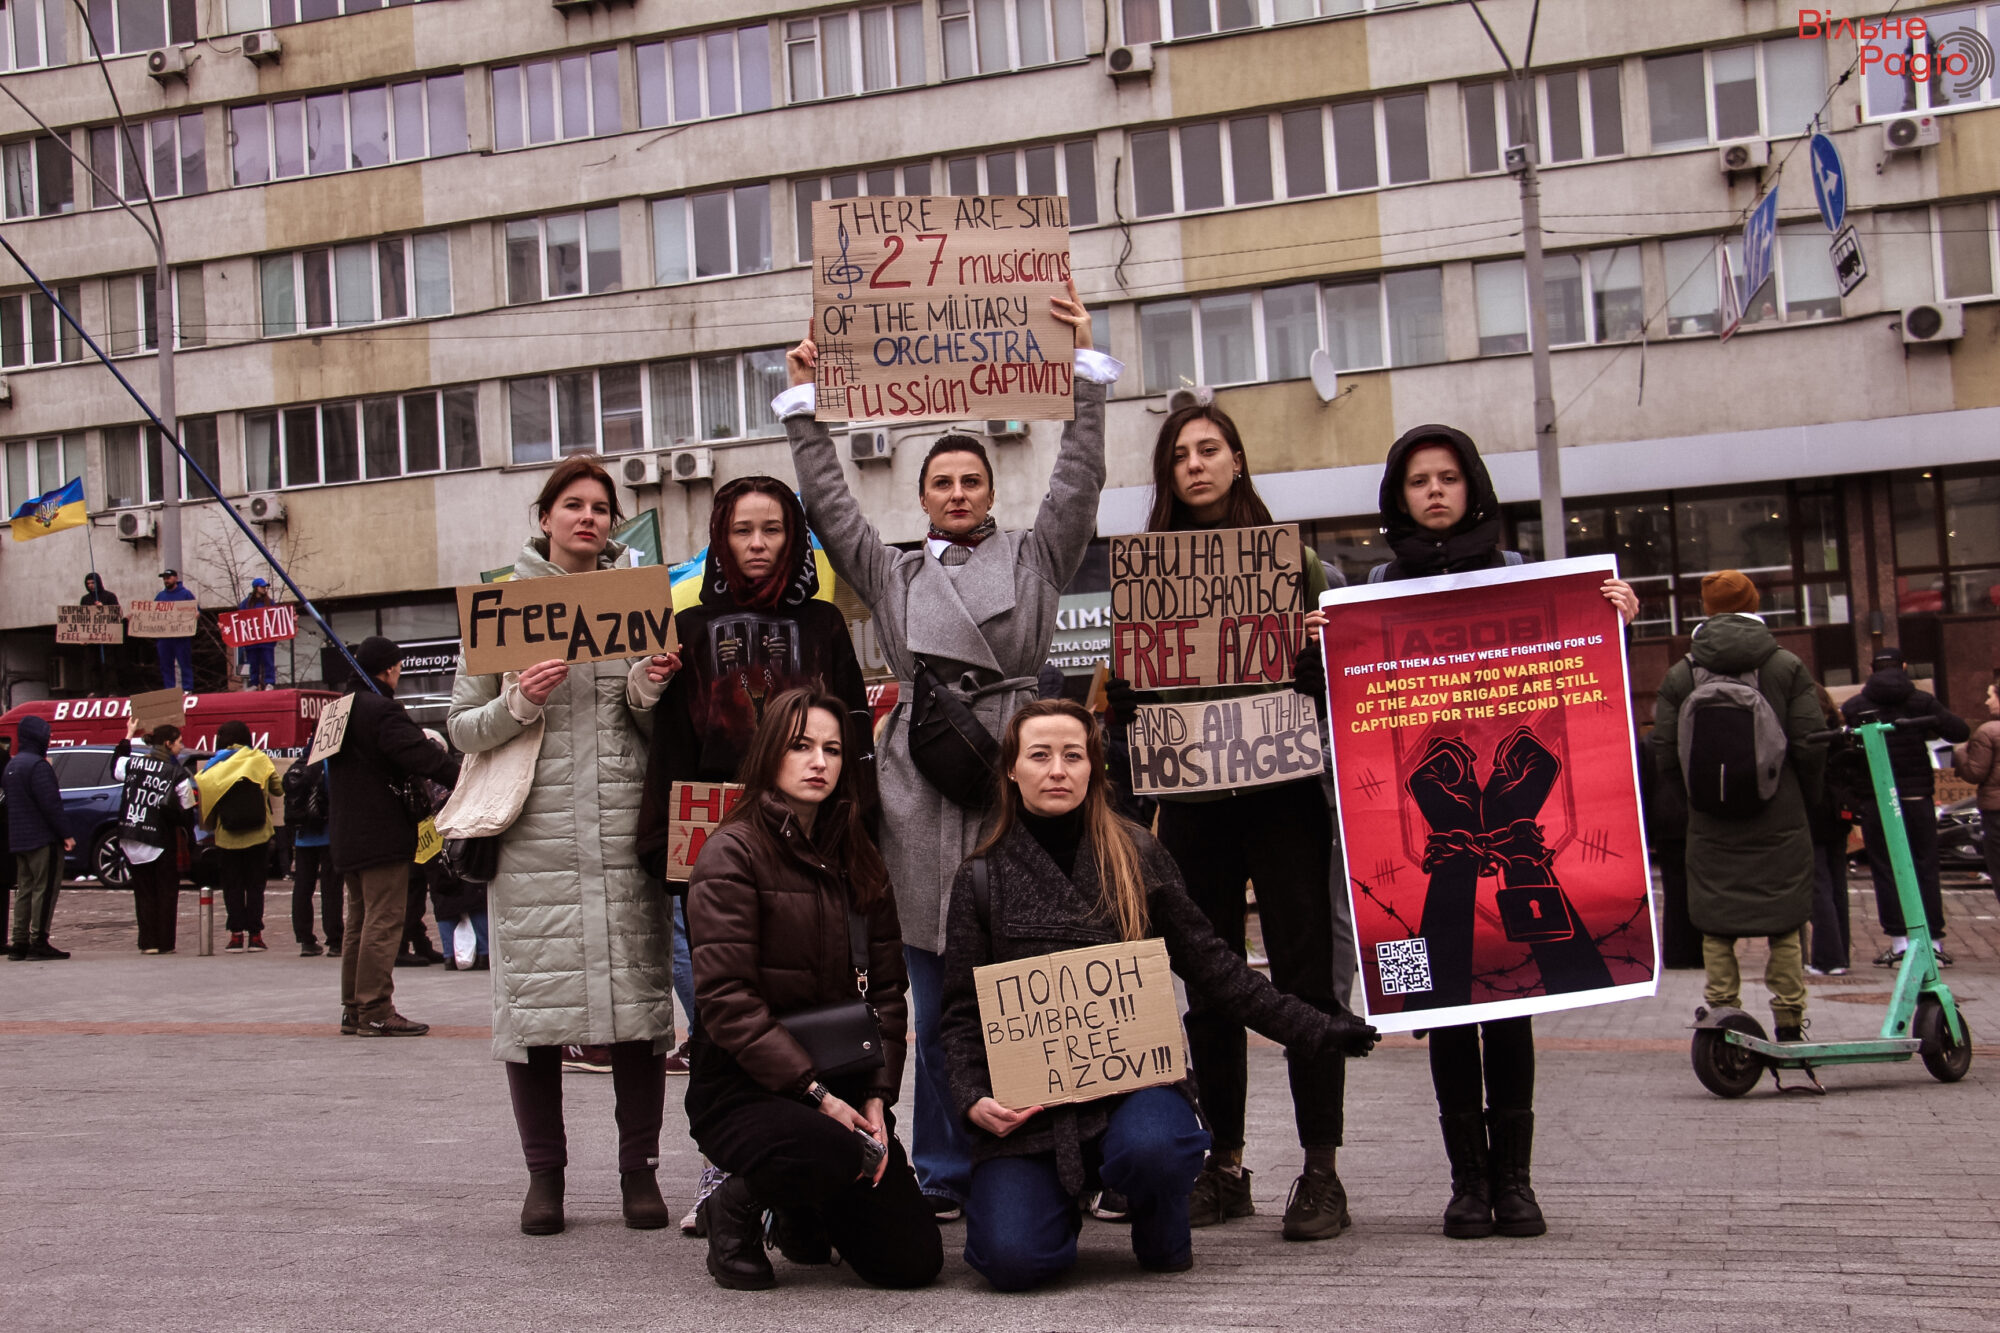 “Плен убивает”. В Киеве прошла очередная акция в поддержку военнопленных (ФОТО) 11